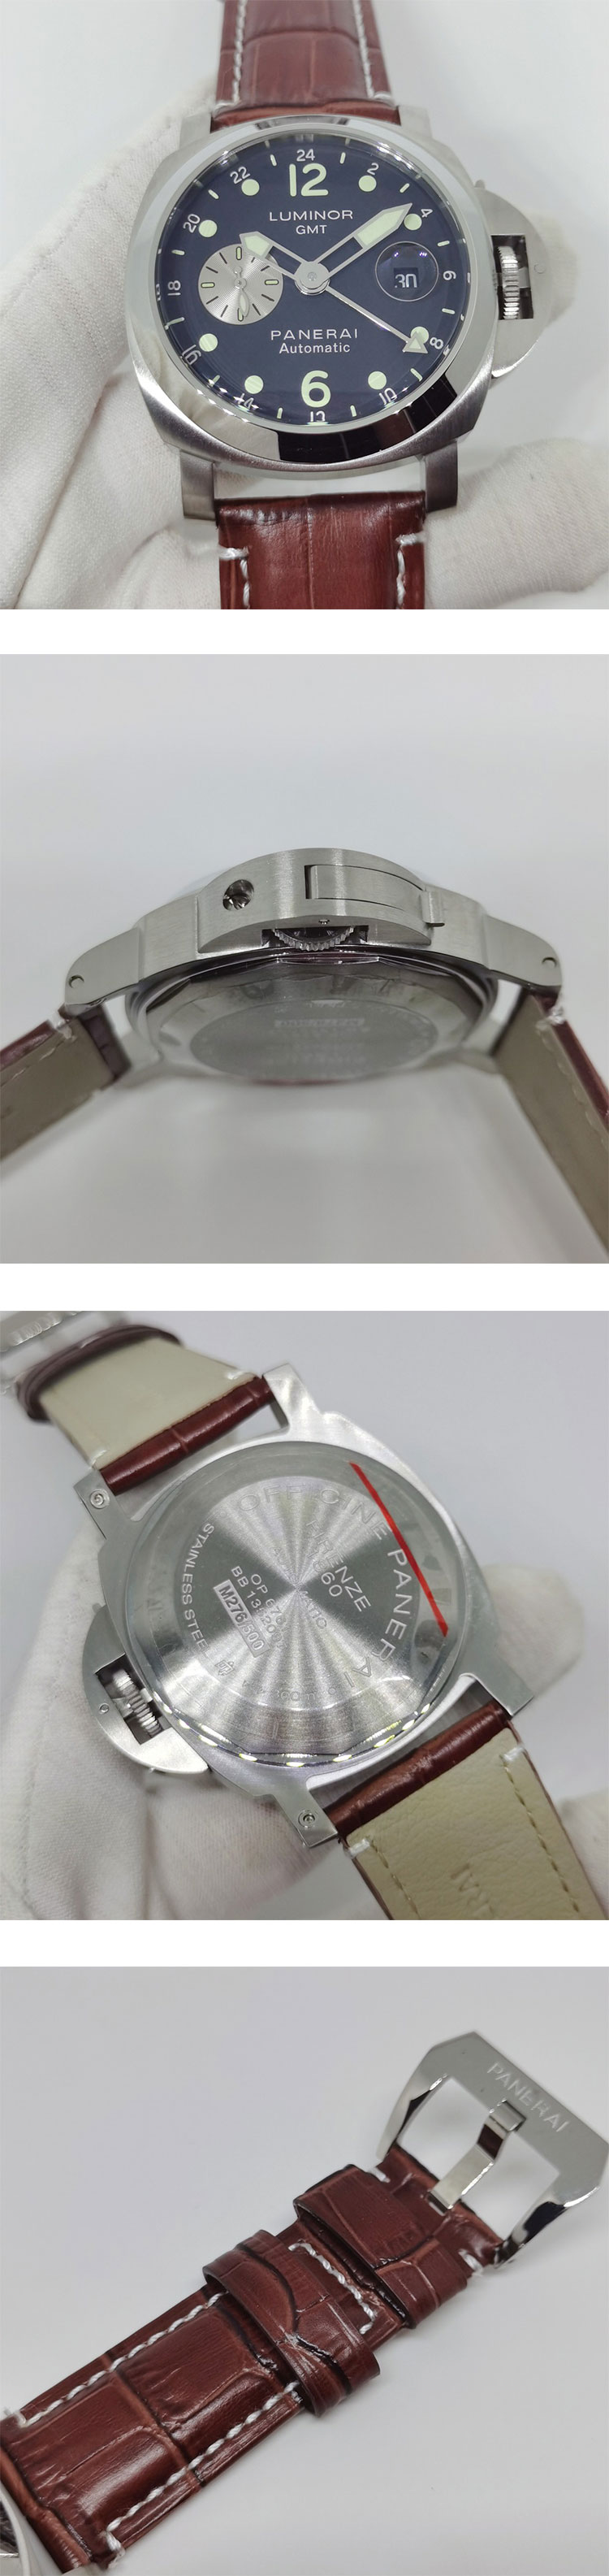 人気パネライコピー時計n級 ルミノール GMT レガッタ スモールセコンド デイト PAM00156 自動巻き